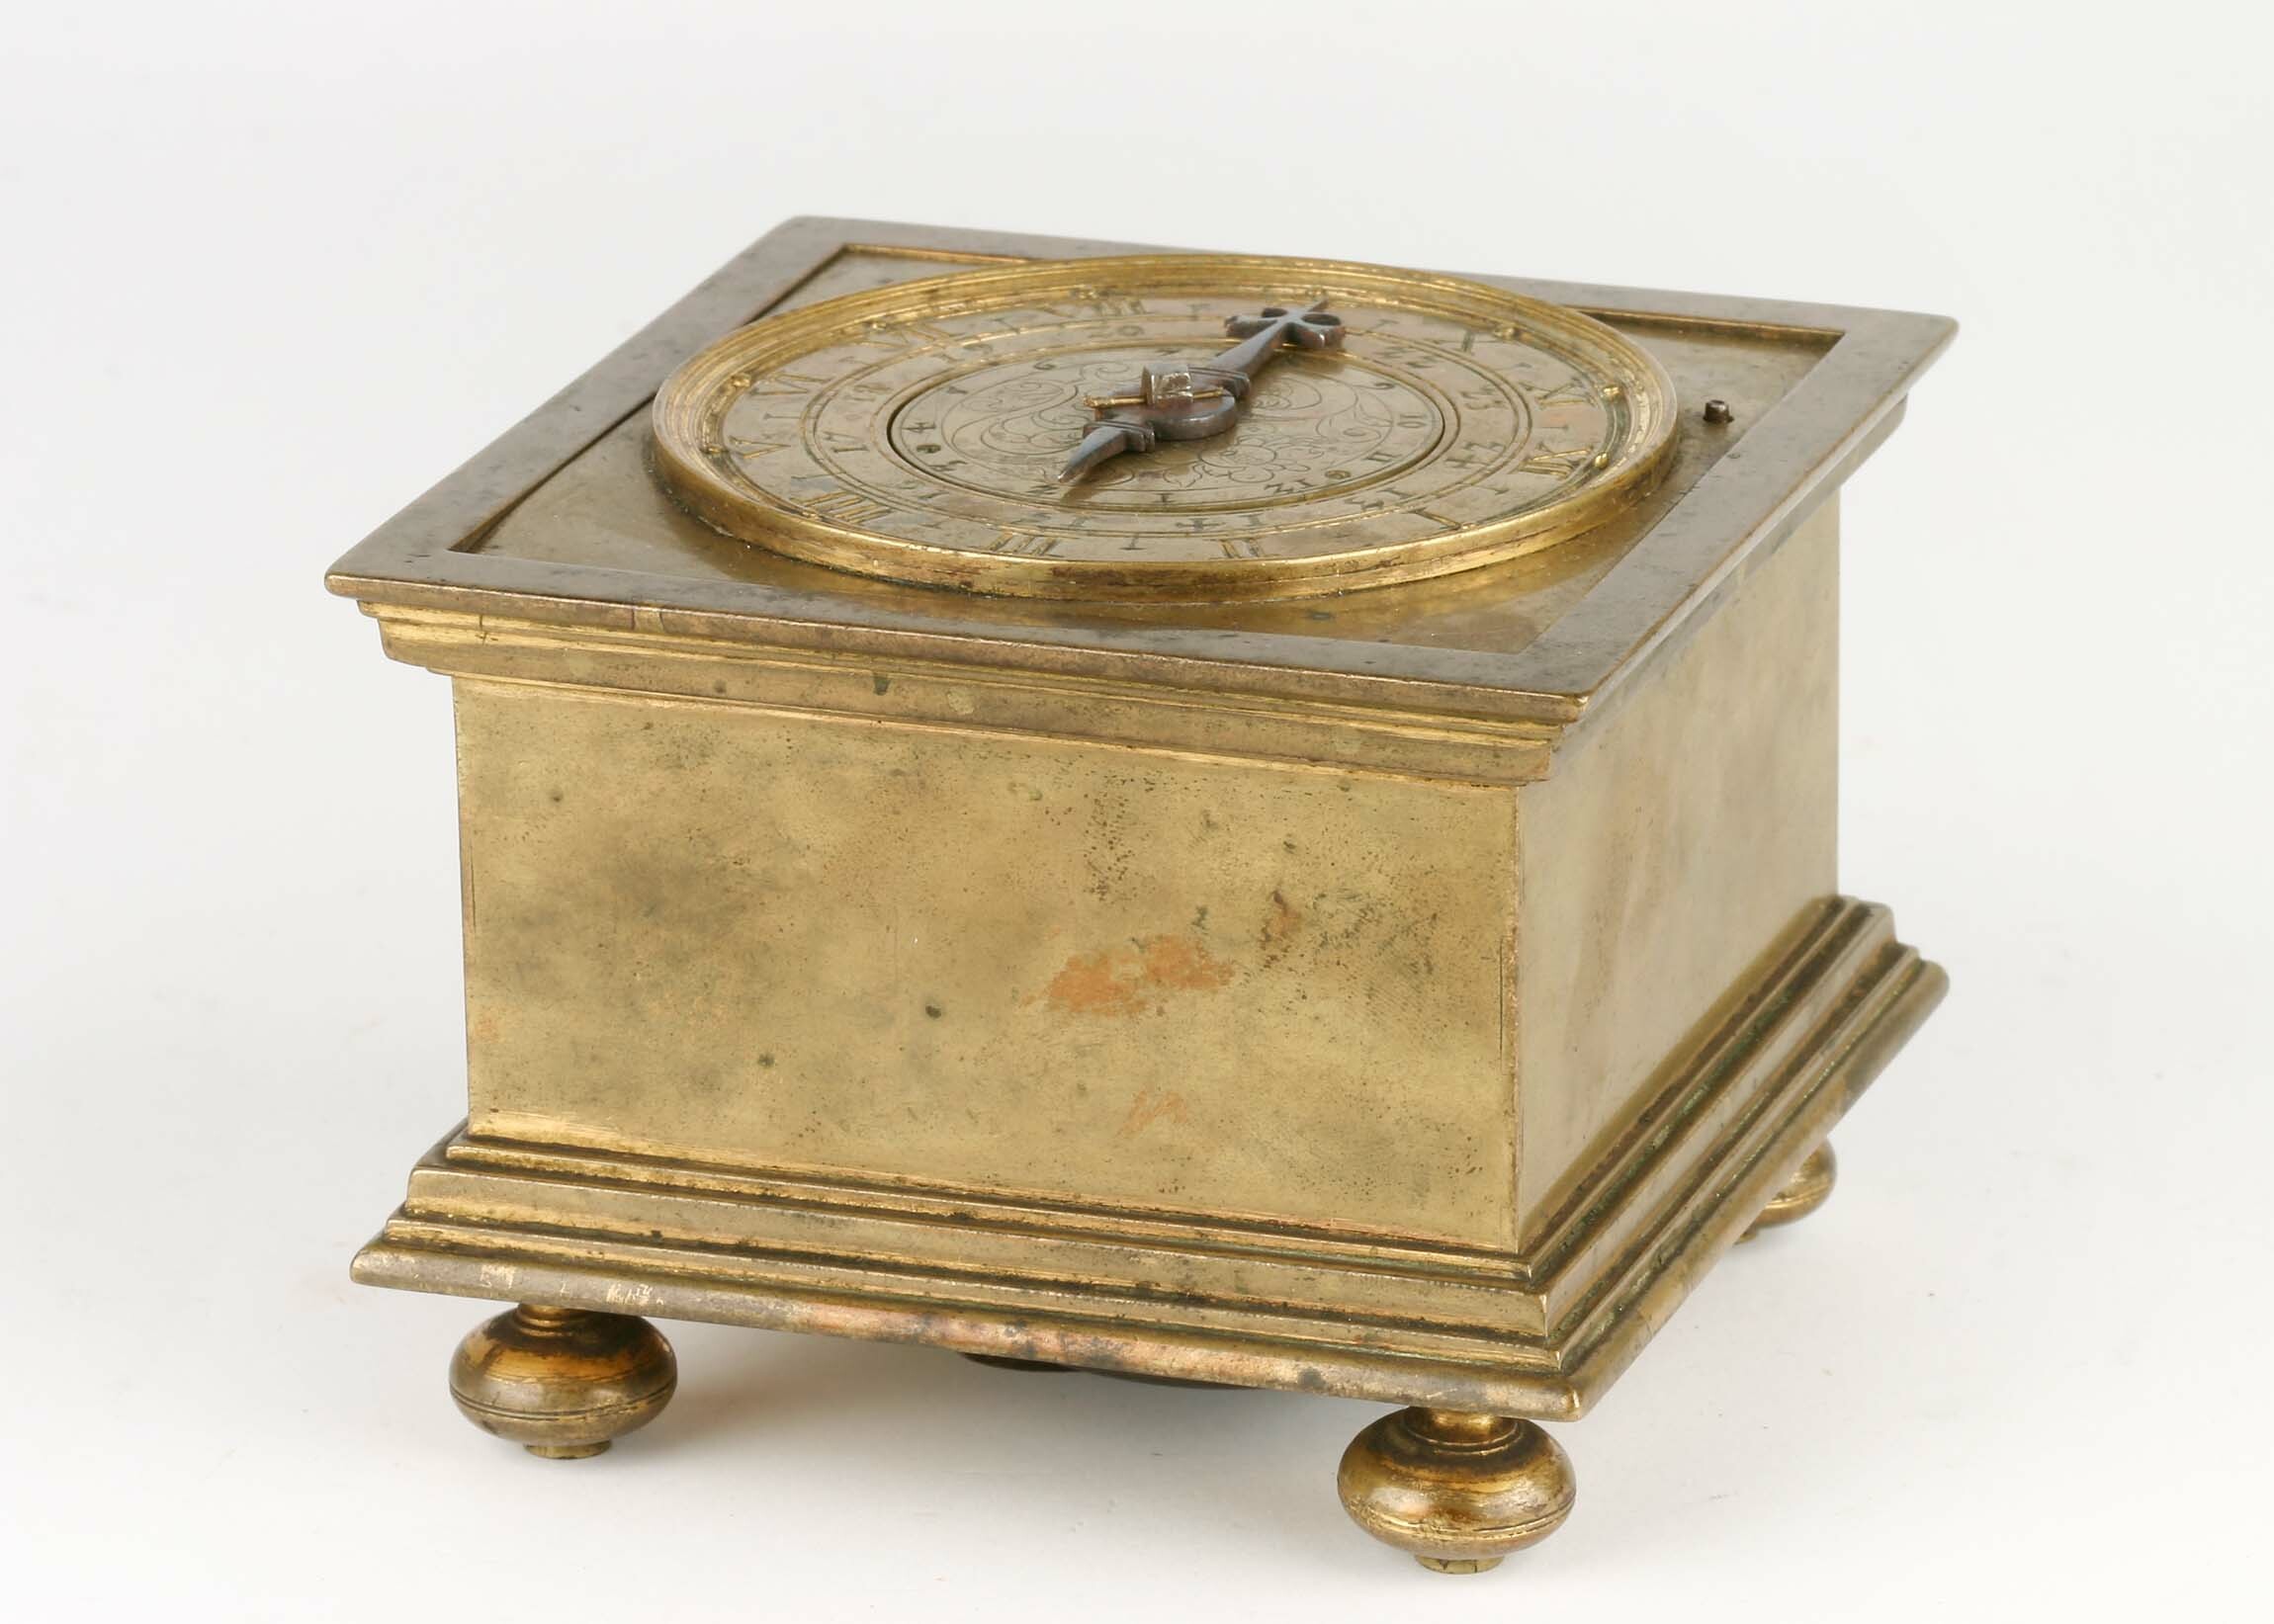 Tischuhr, Mitteleuropa, Mitte 17. Jahrhundert (Deutsches Uhrenmuseum CC BY-SA)